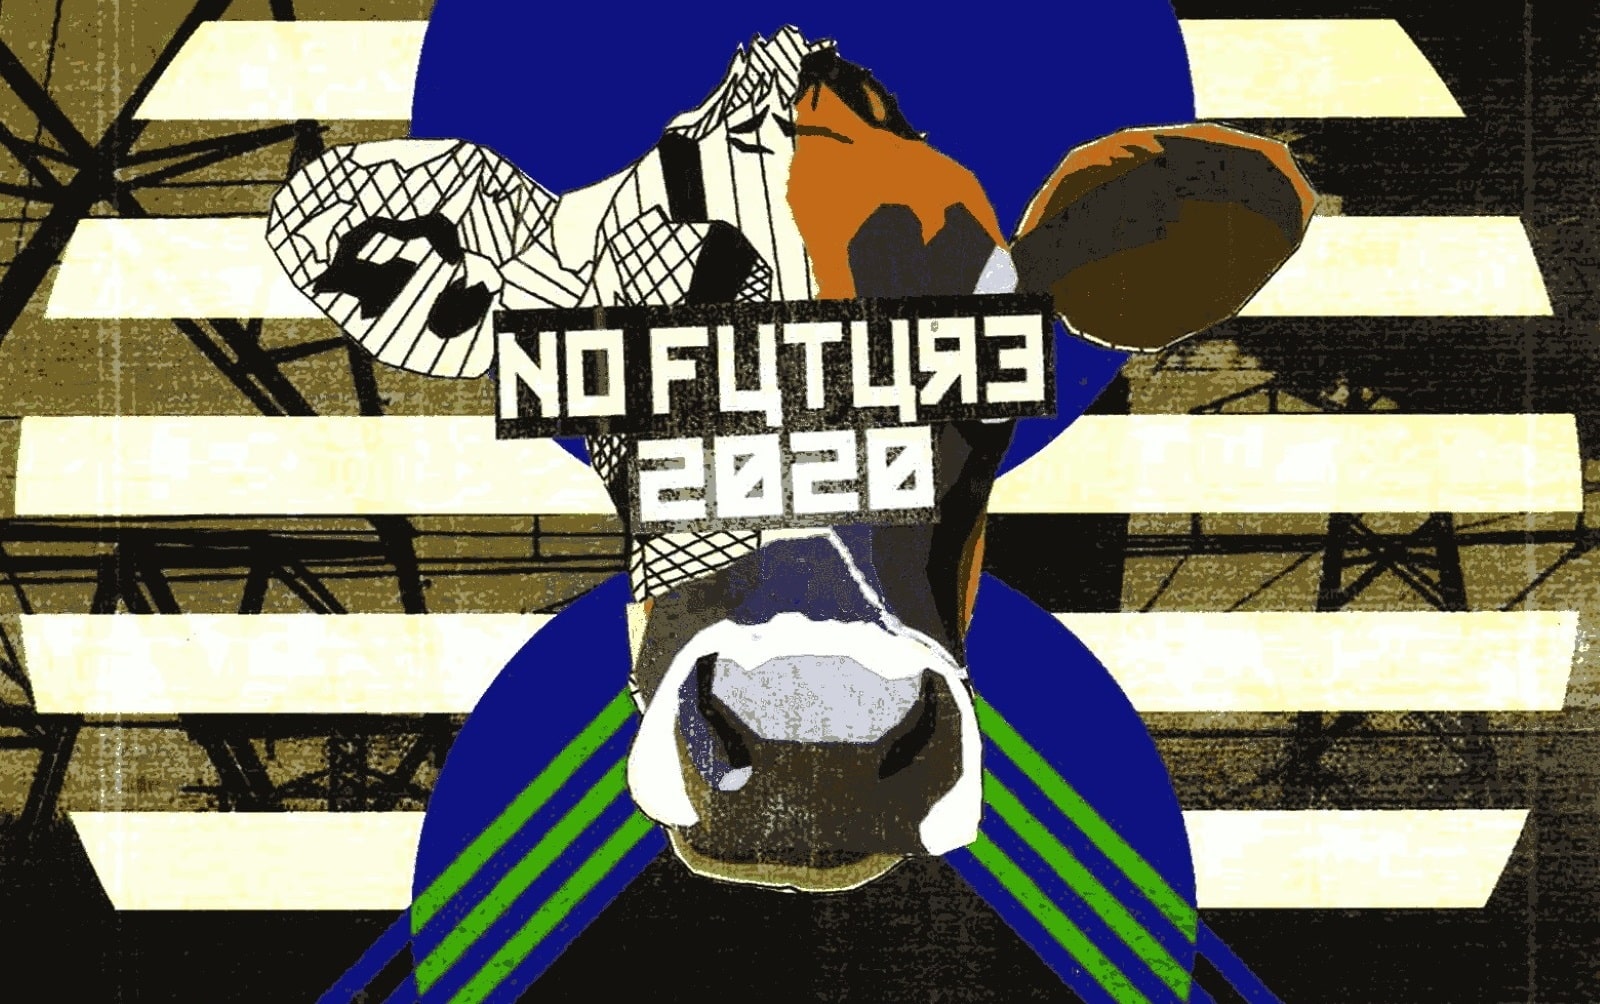 No Future cover